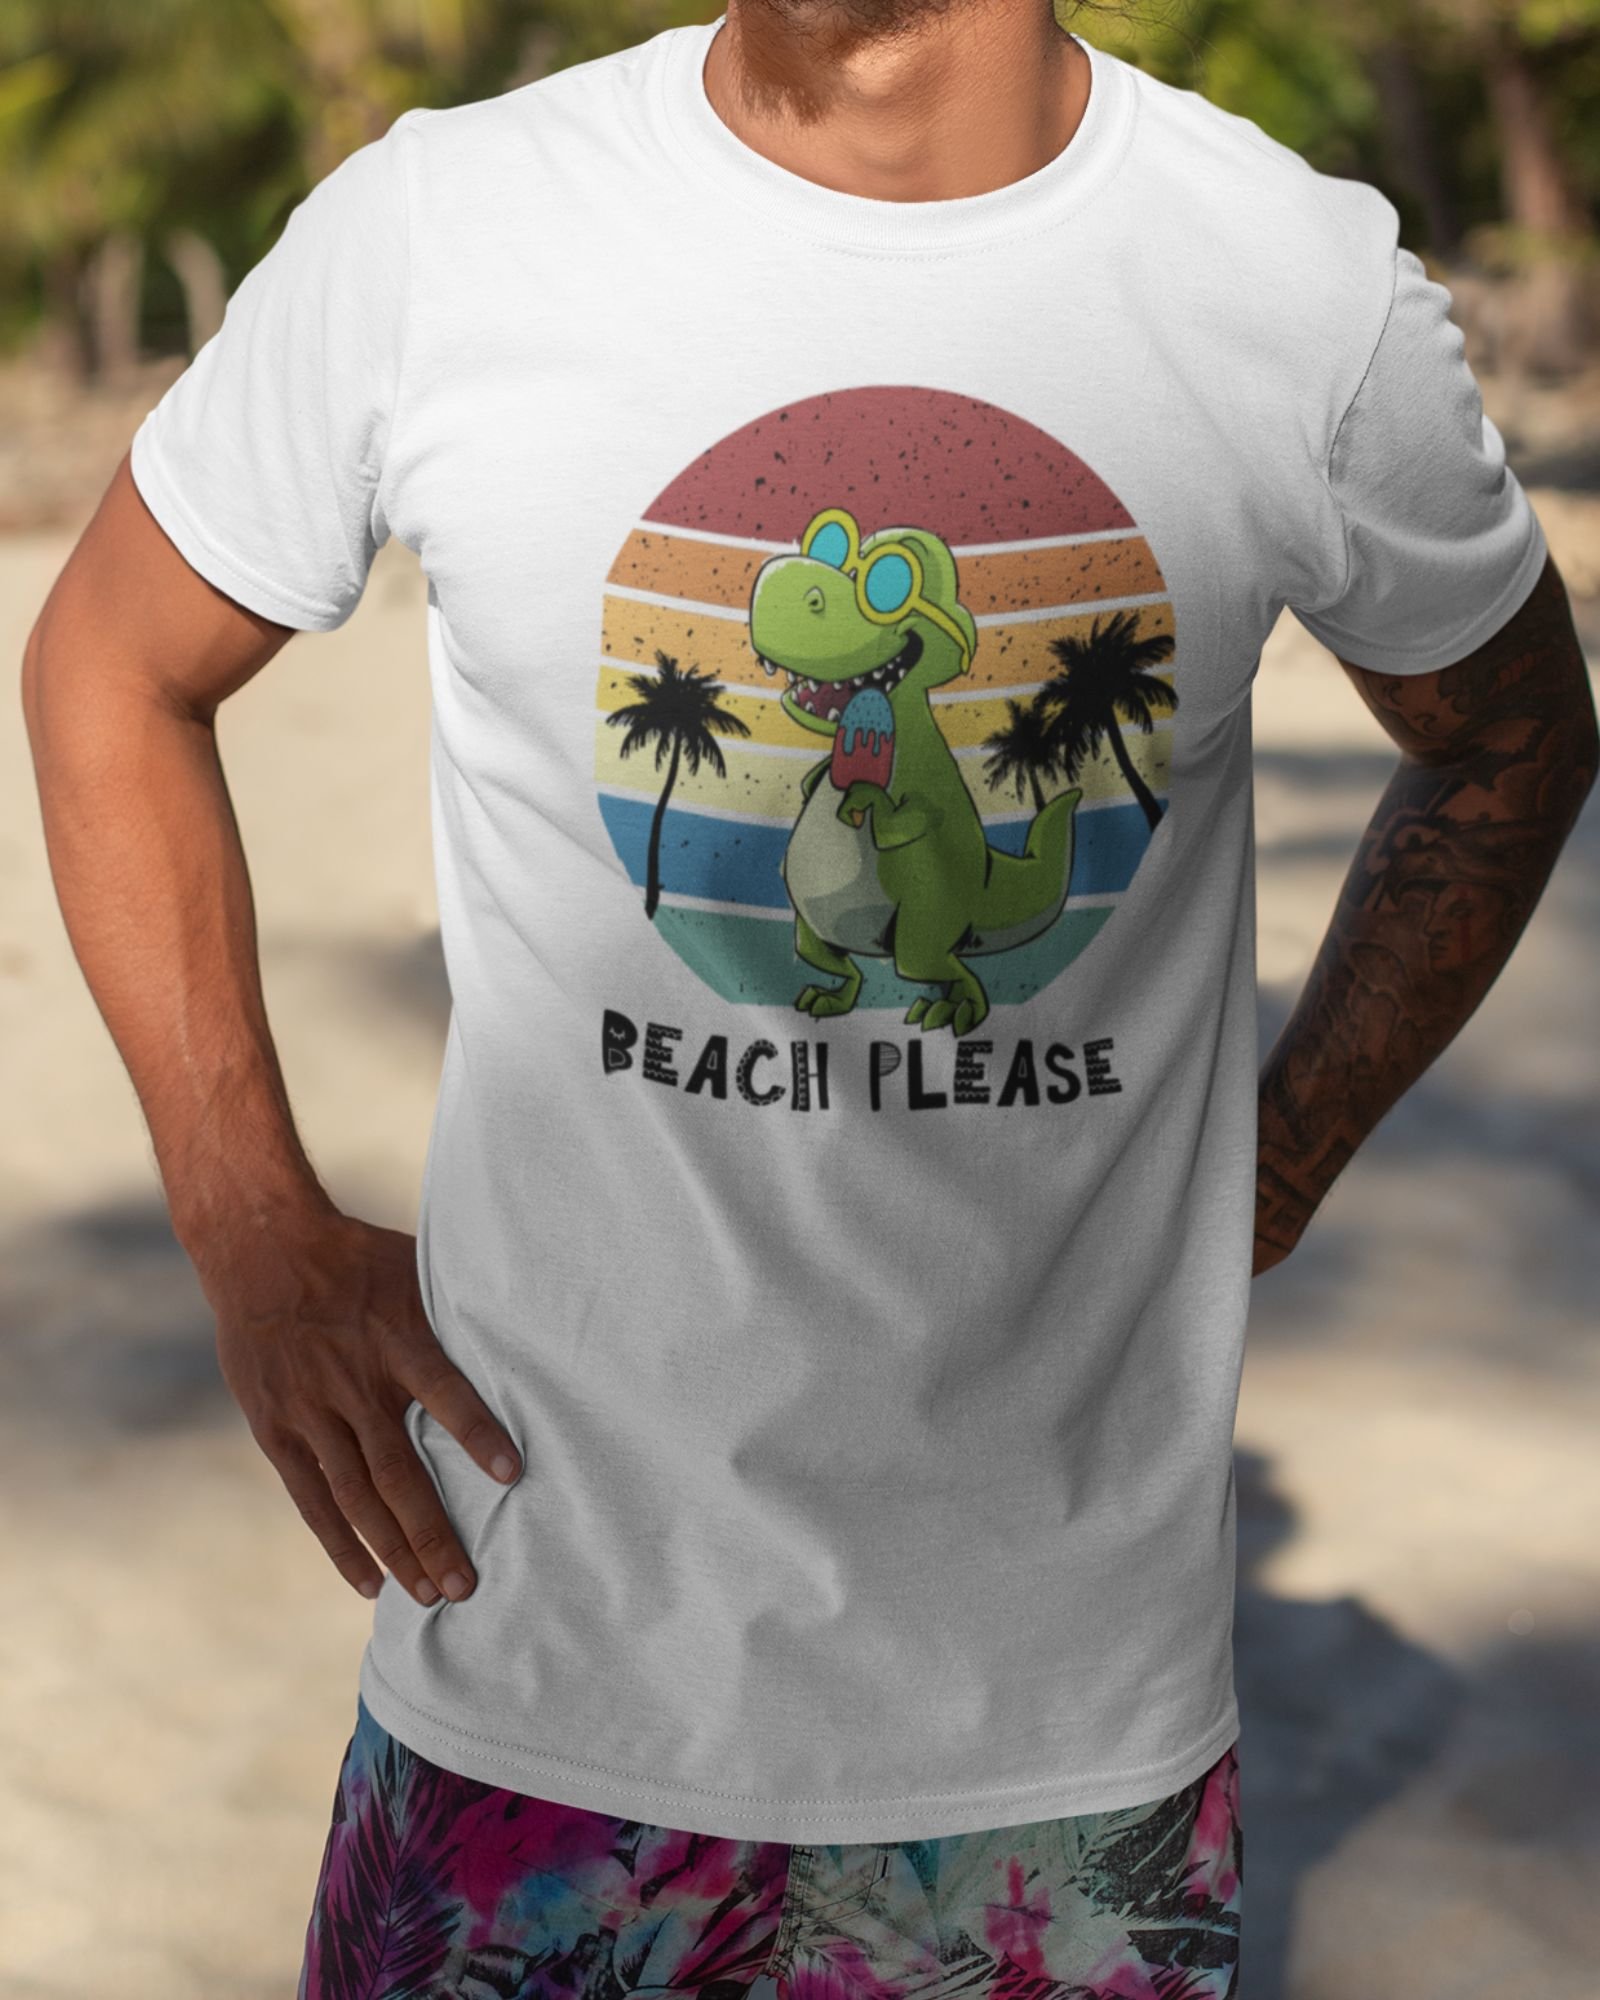 Beach Please, Dinosaur Shirt, T Rex, Summer Vacation Shirts For Men